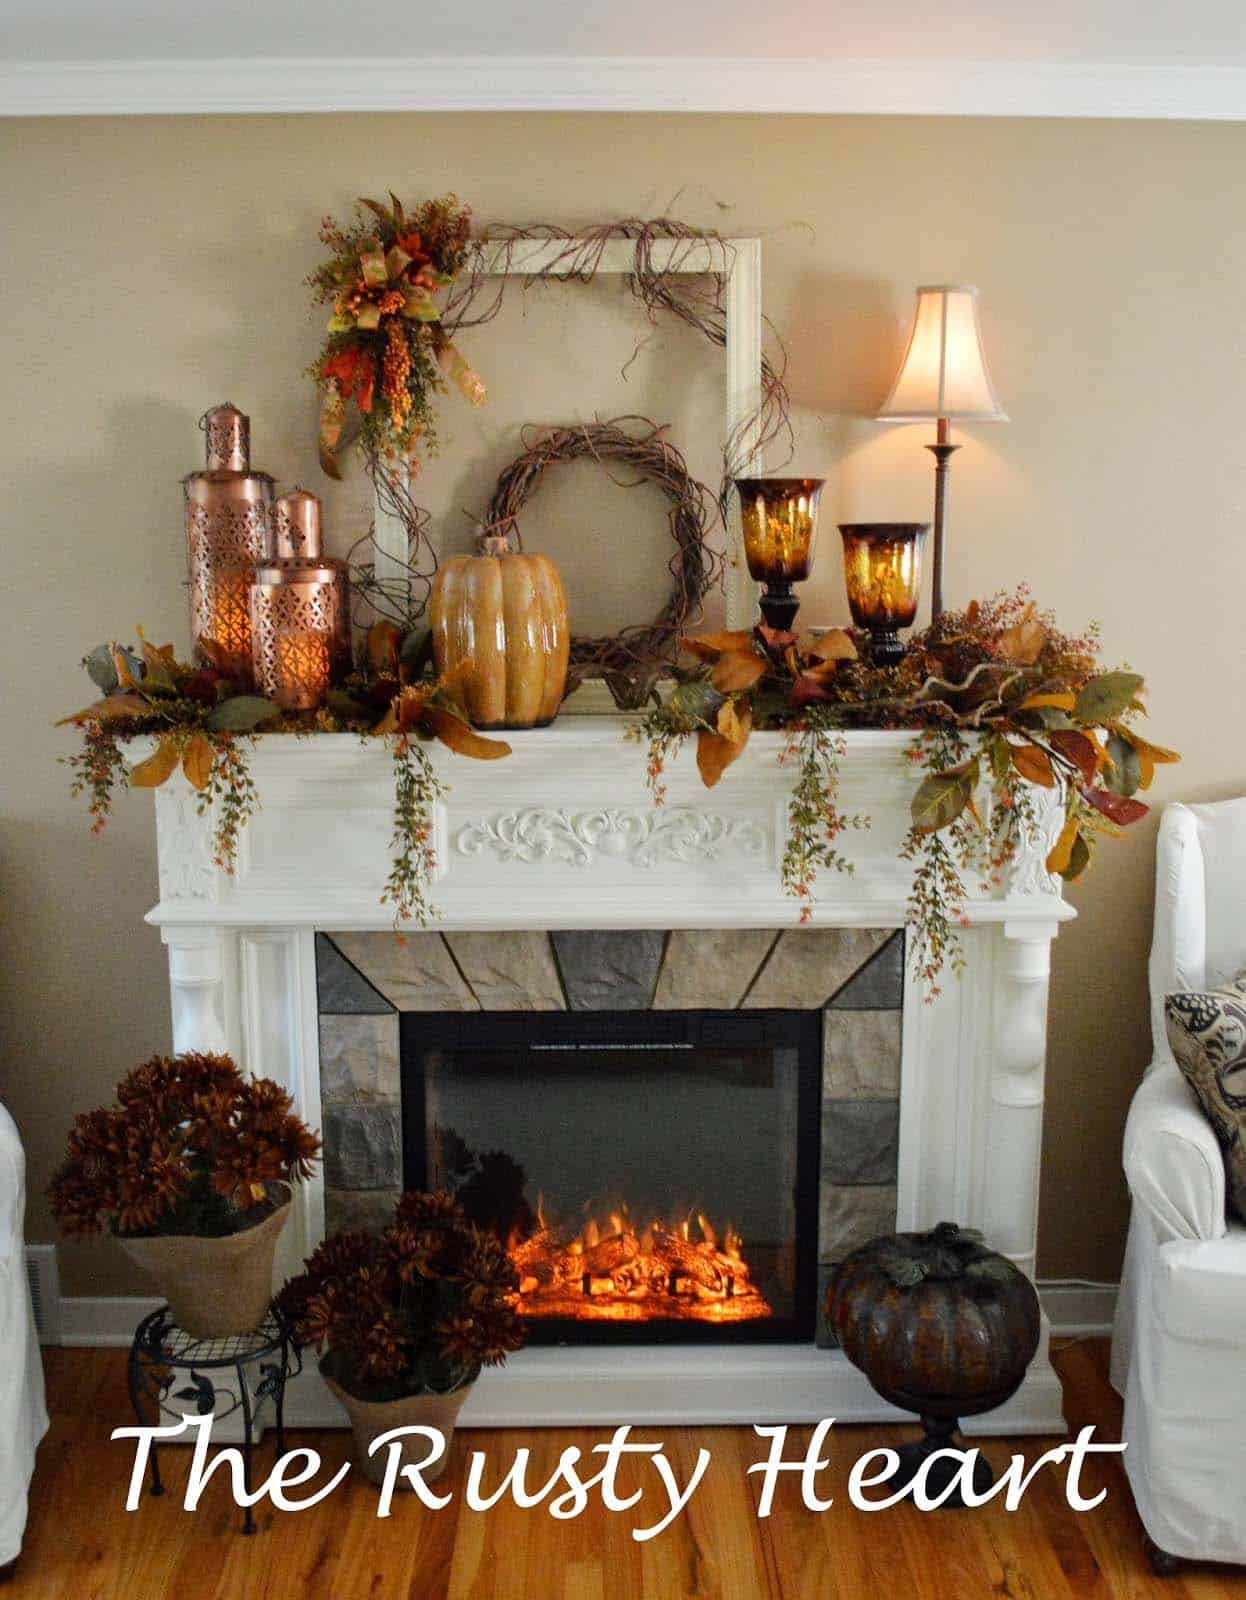 Fall Decorations Fireplace Mantel
 30 Amazing fall decorating ideas for your fireplace mantel